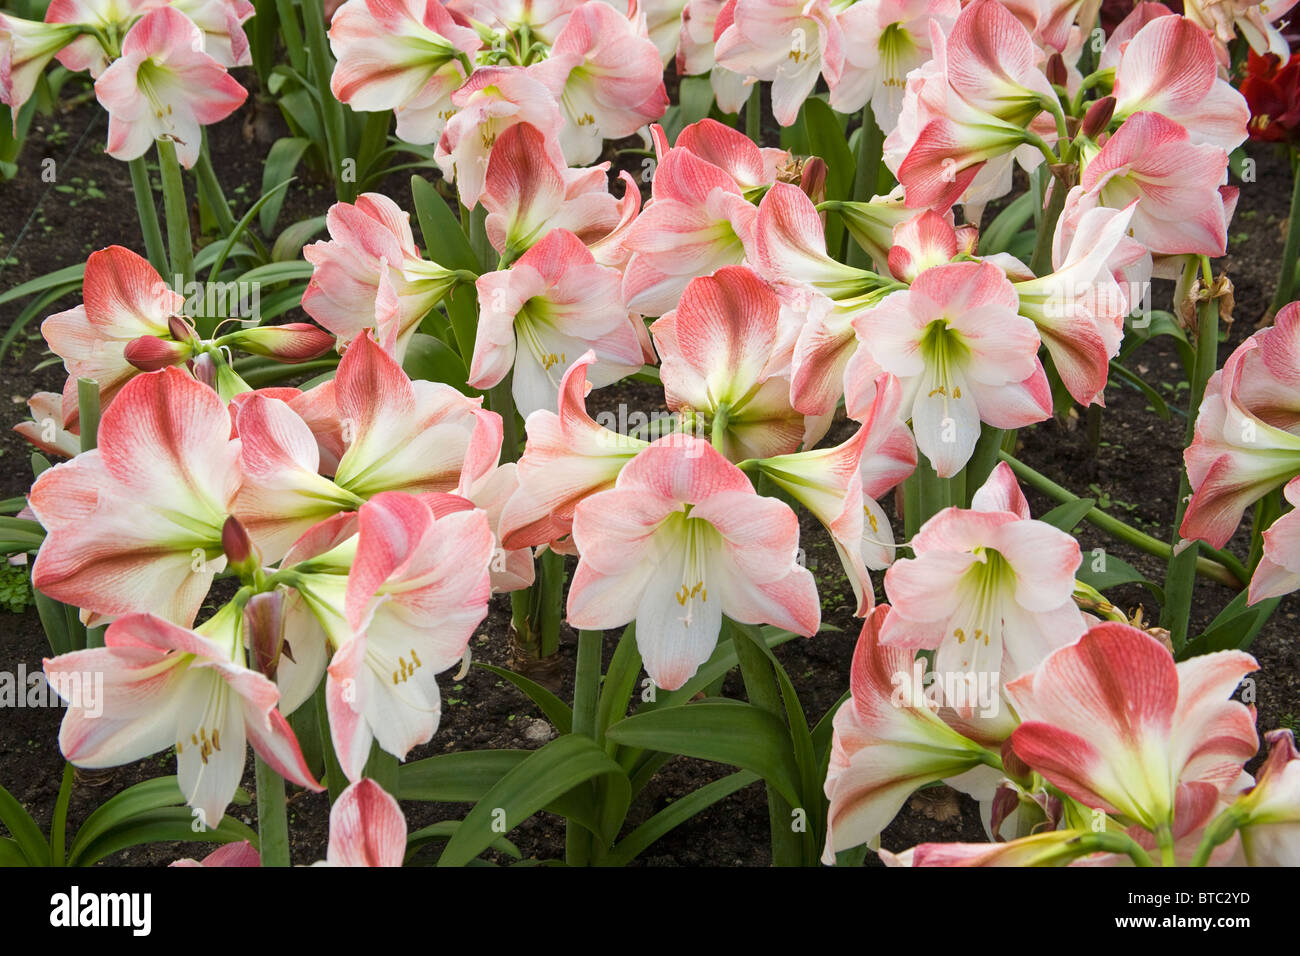 Amaryllis Flower Eden Project United Kingdom Stock Photo